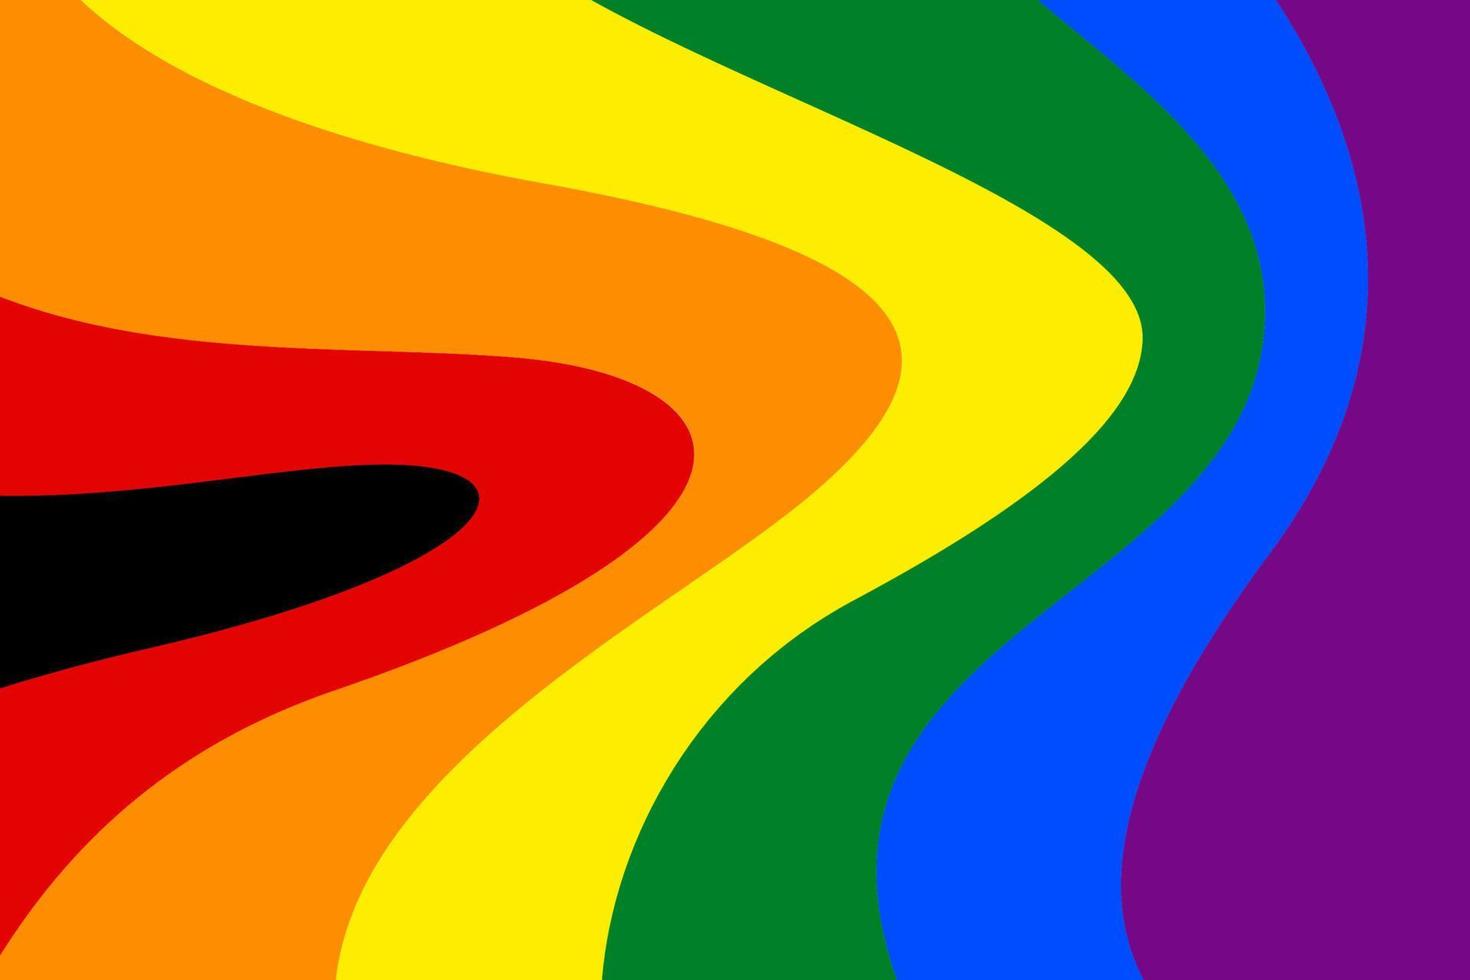 bakgrund med kurvdesign, lgbtq regnbågskurva färgdesign, homosexuella, lesbiska, bisexuella, homosexuella, transsexuella mänskliga koncept. vektor illustration